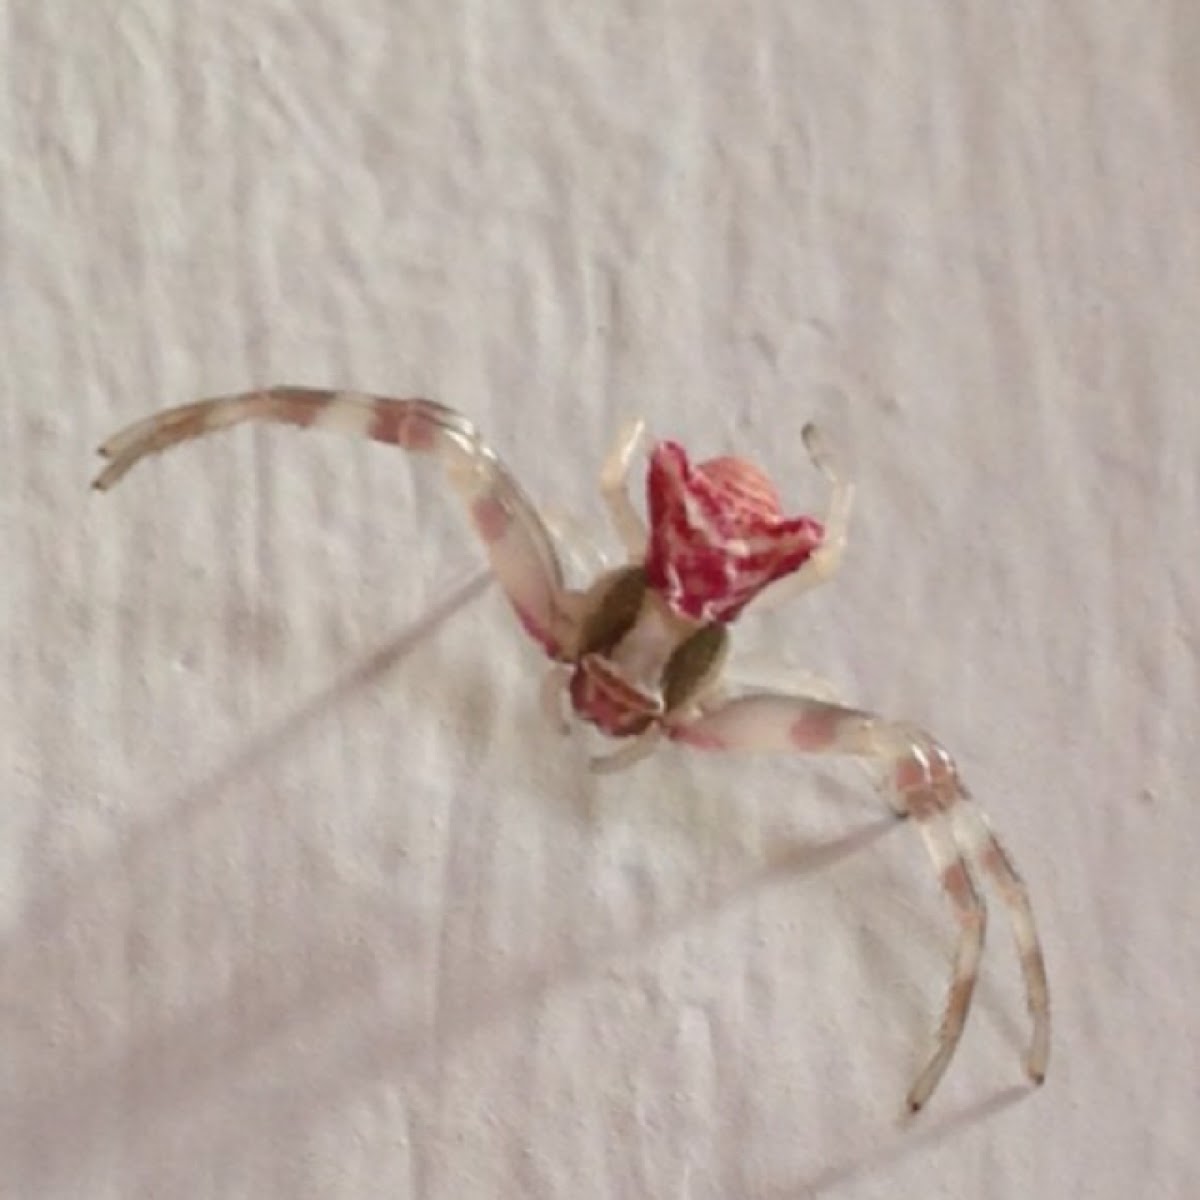 Thomisus crab spider